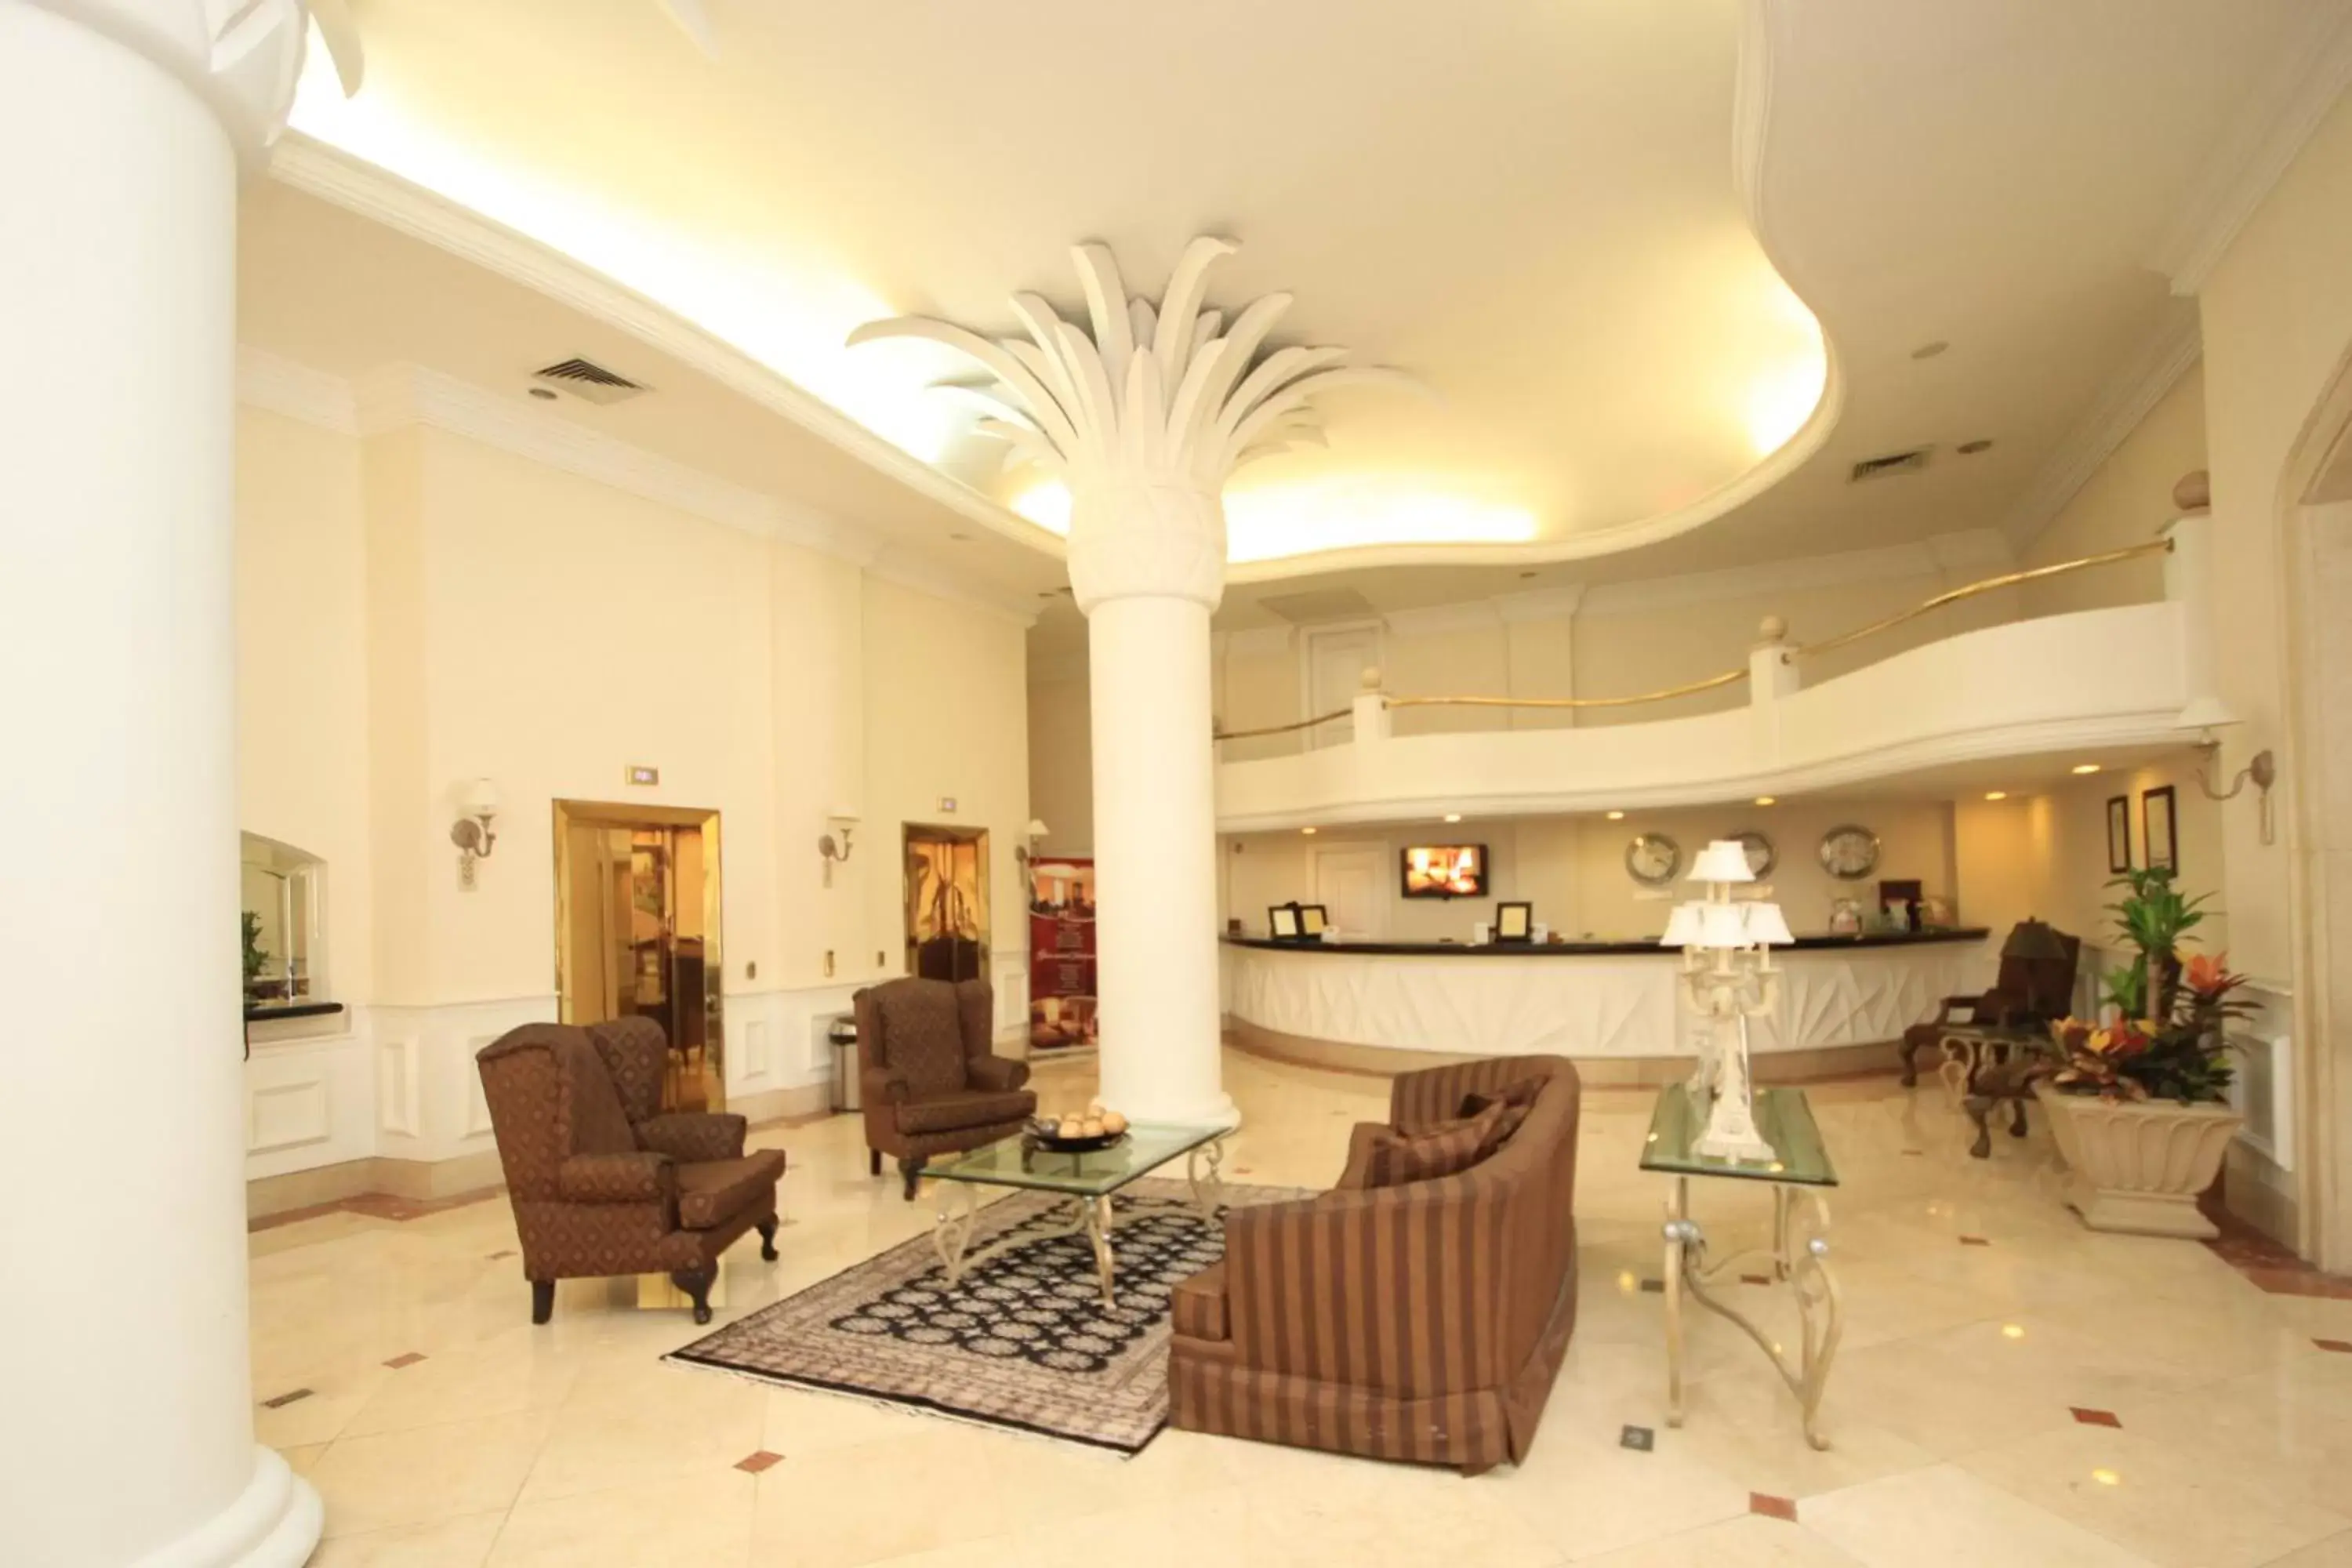 Lobby or reception, Lounge/Bar in Gran Hotel Diligencias